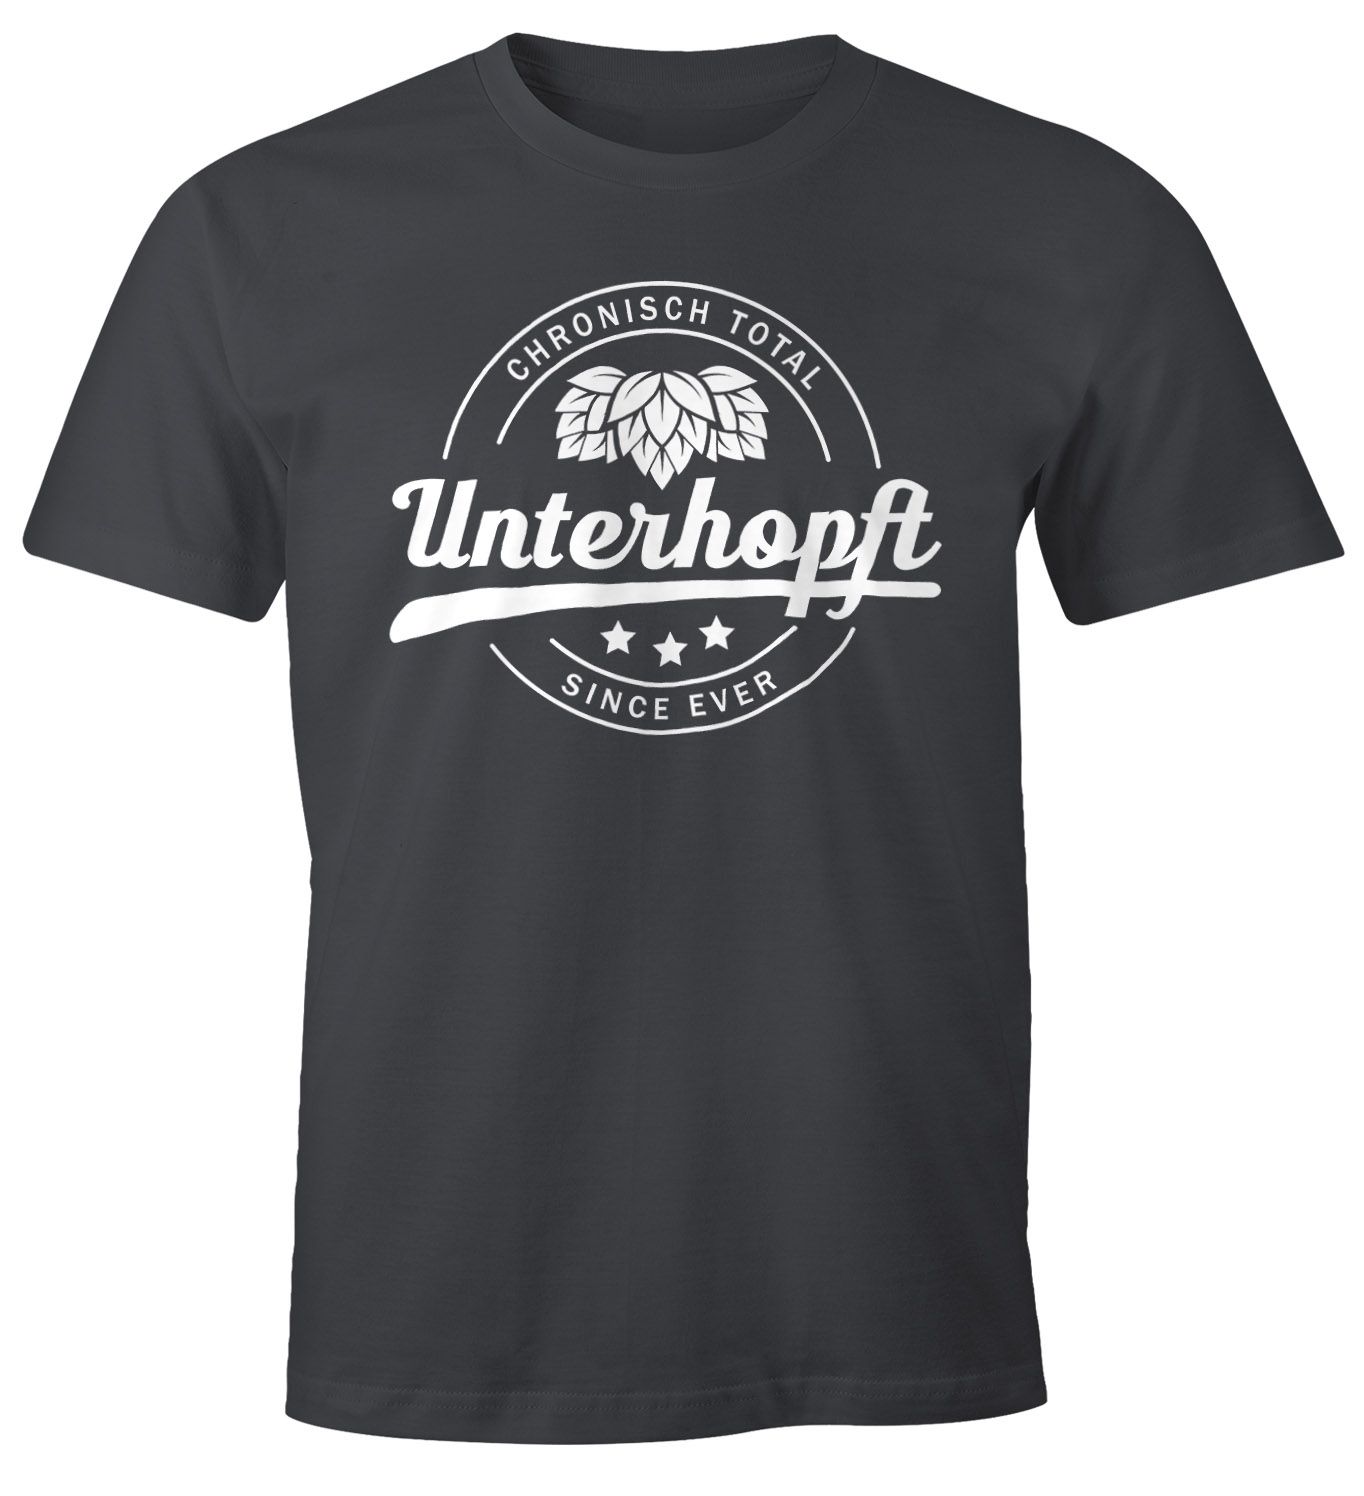 Chronisch Unterhopft Total Herren T-Shirt Since Ever Fun-Shirt Moonworks®